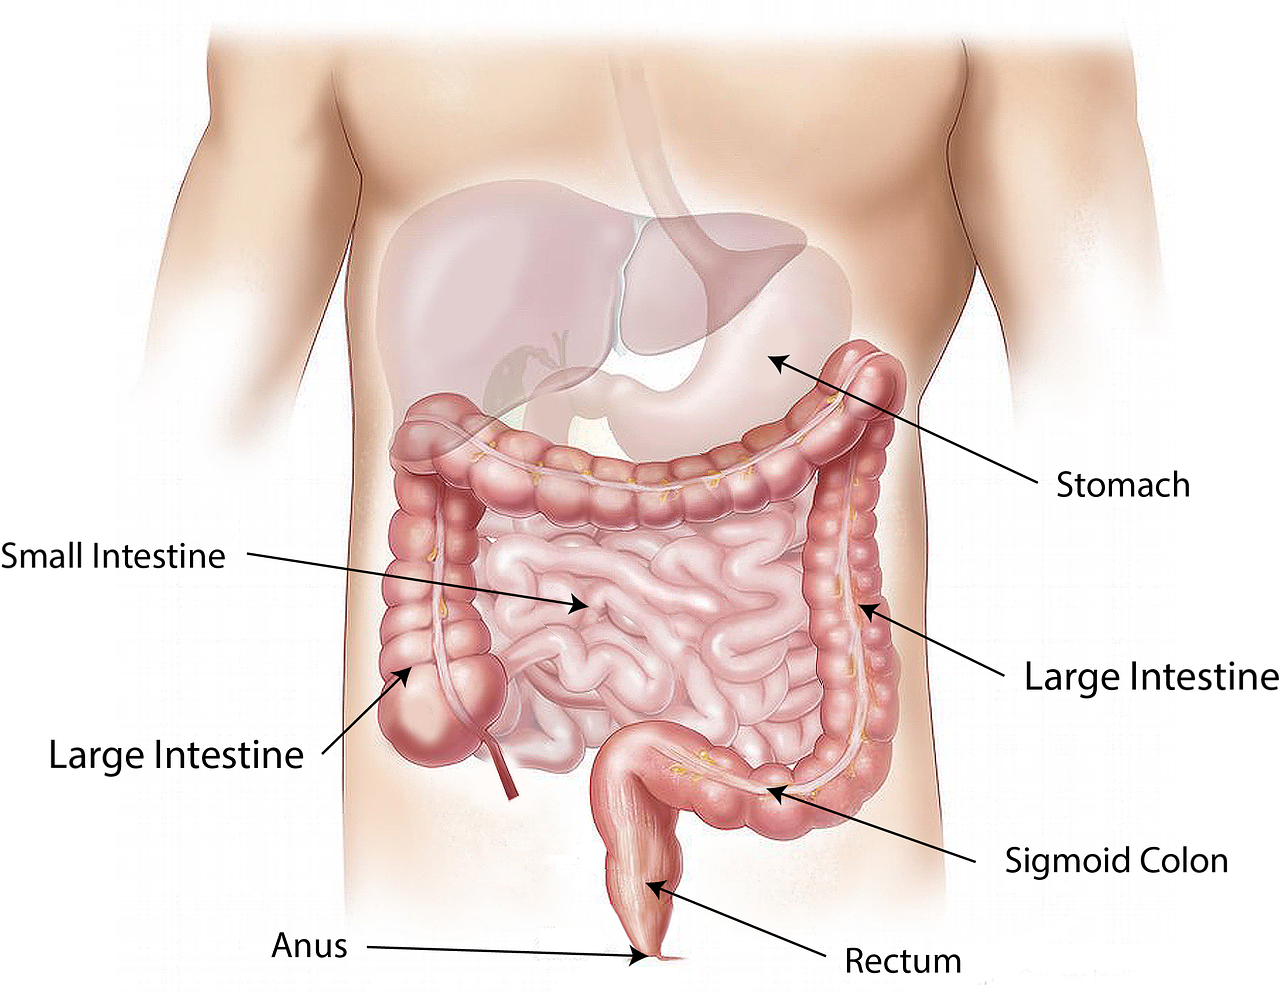 ¿Cómo tratar los cuadritos en el abdomen?